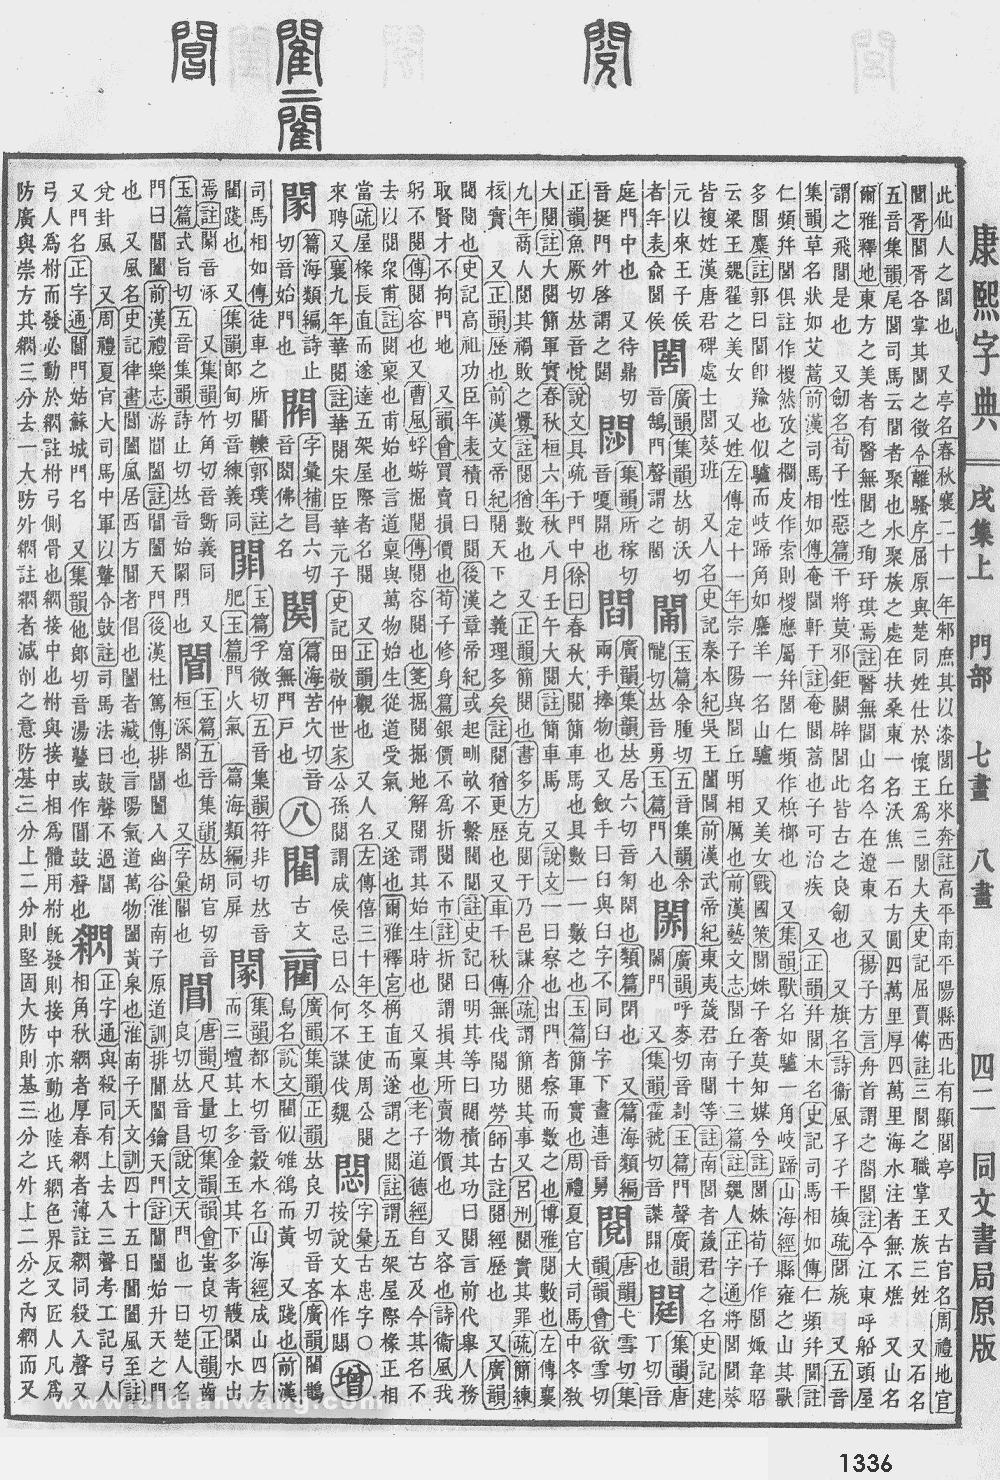 康熙字典掃描版第1336頁